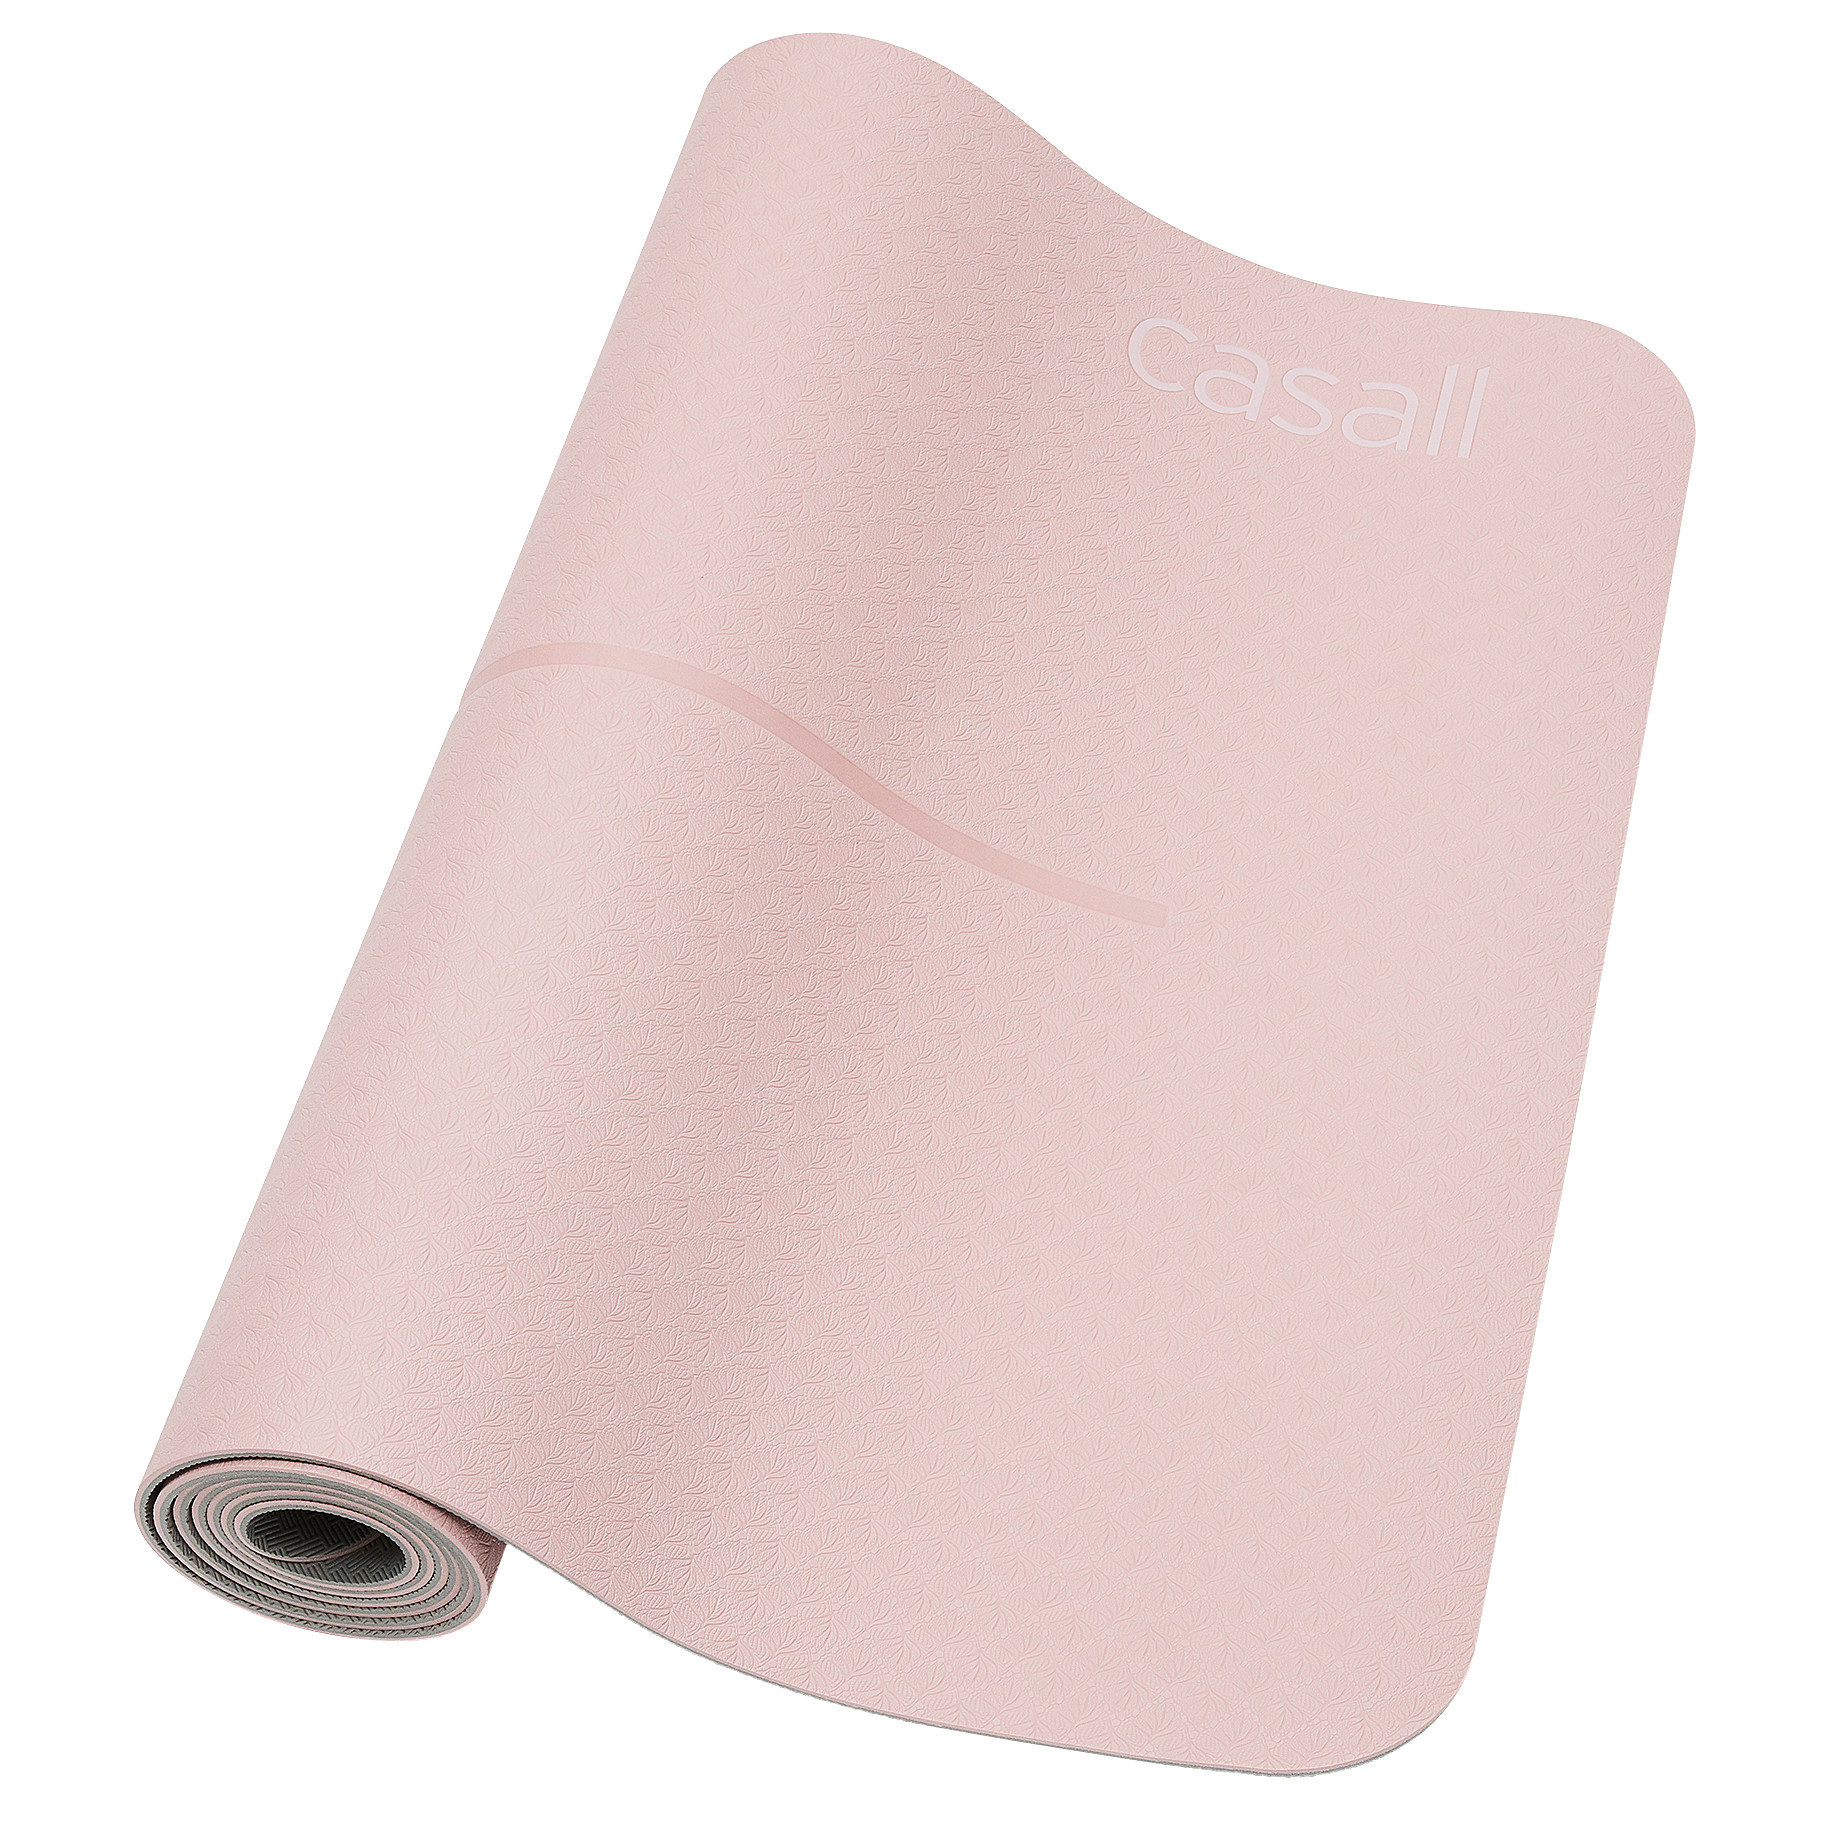 CASALL Yoga Mat Position 4 mm Lucky pink/grey